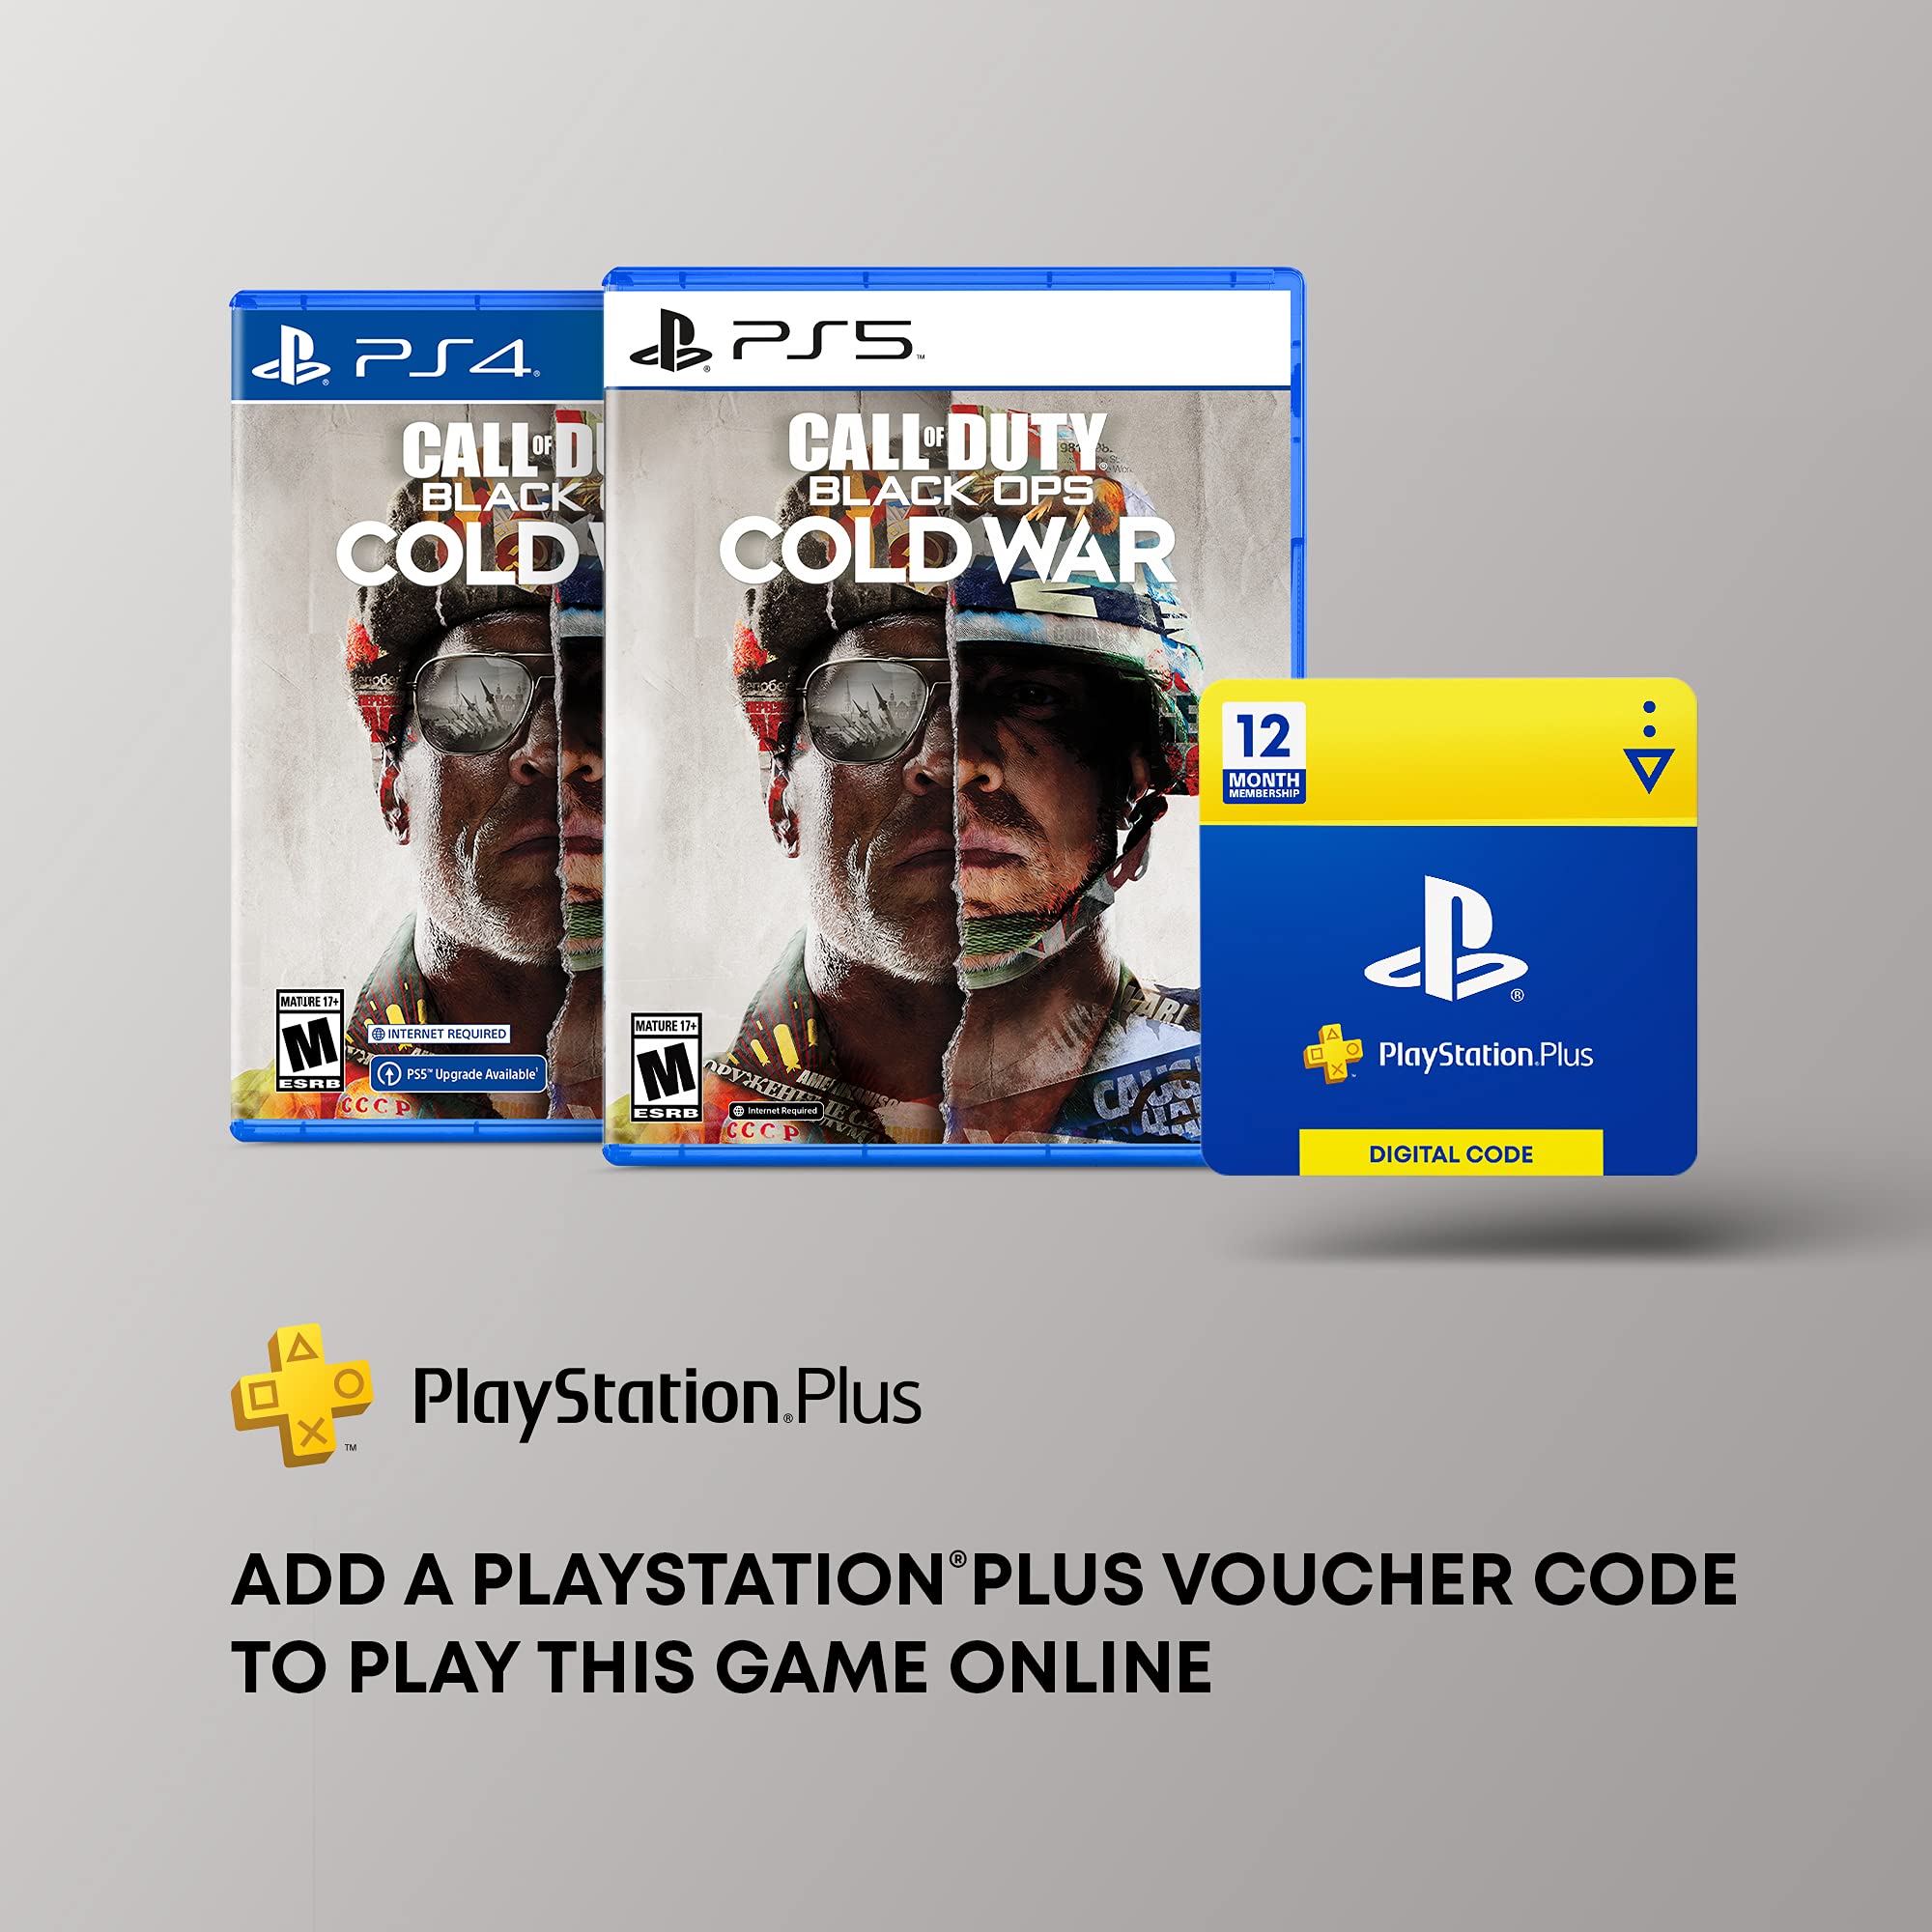 PlayStation Plus: 12 Month Membership [Digital Code]